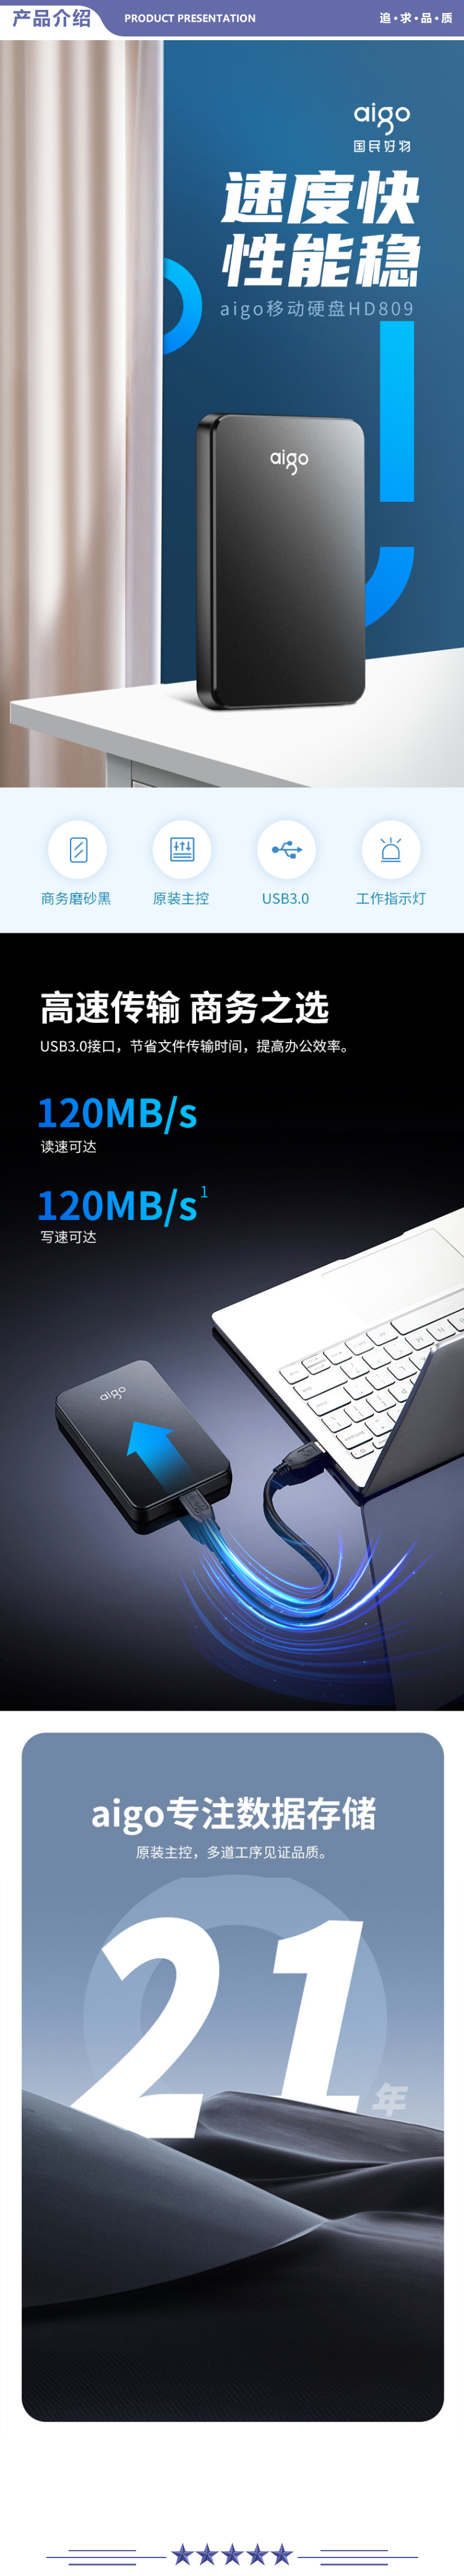 爱国者 (aigo) HD809 500GB USB3.0 移动硬盘 黑色 稳定高速传输 简约设计 睿智之美 商务便携 2.jpg